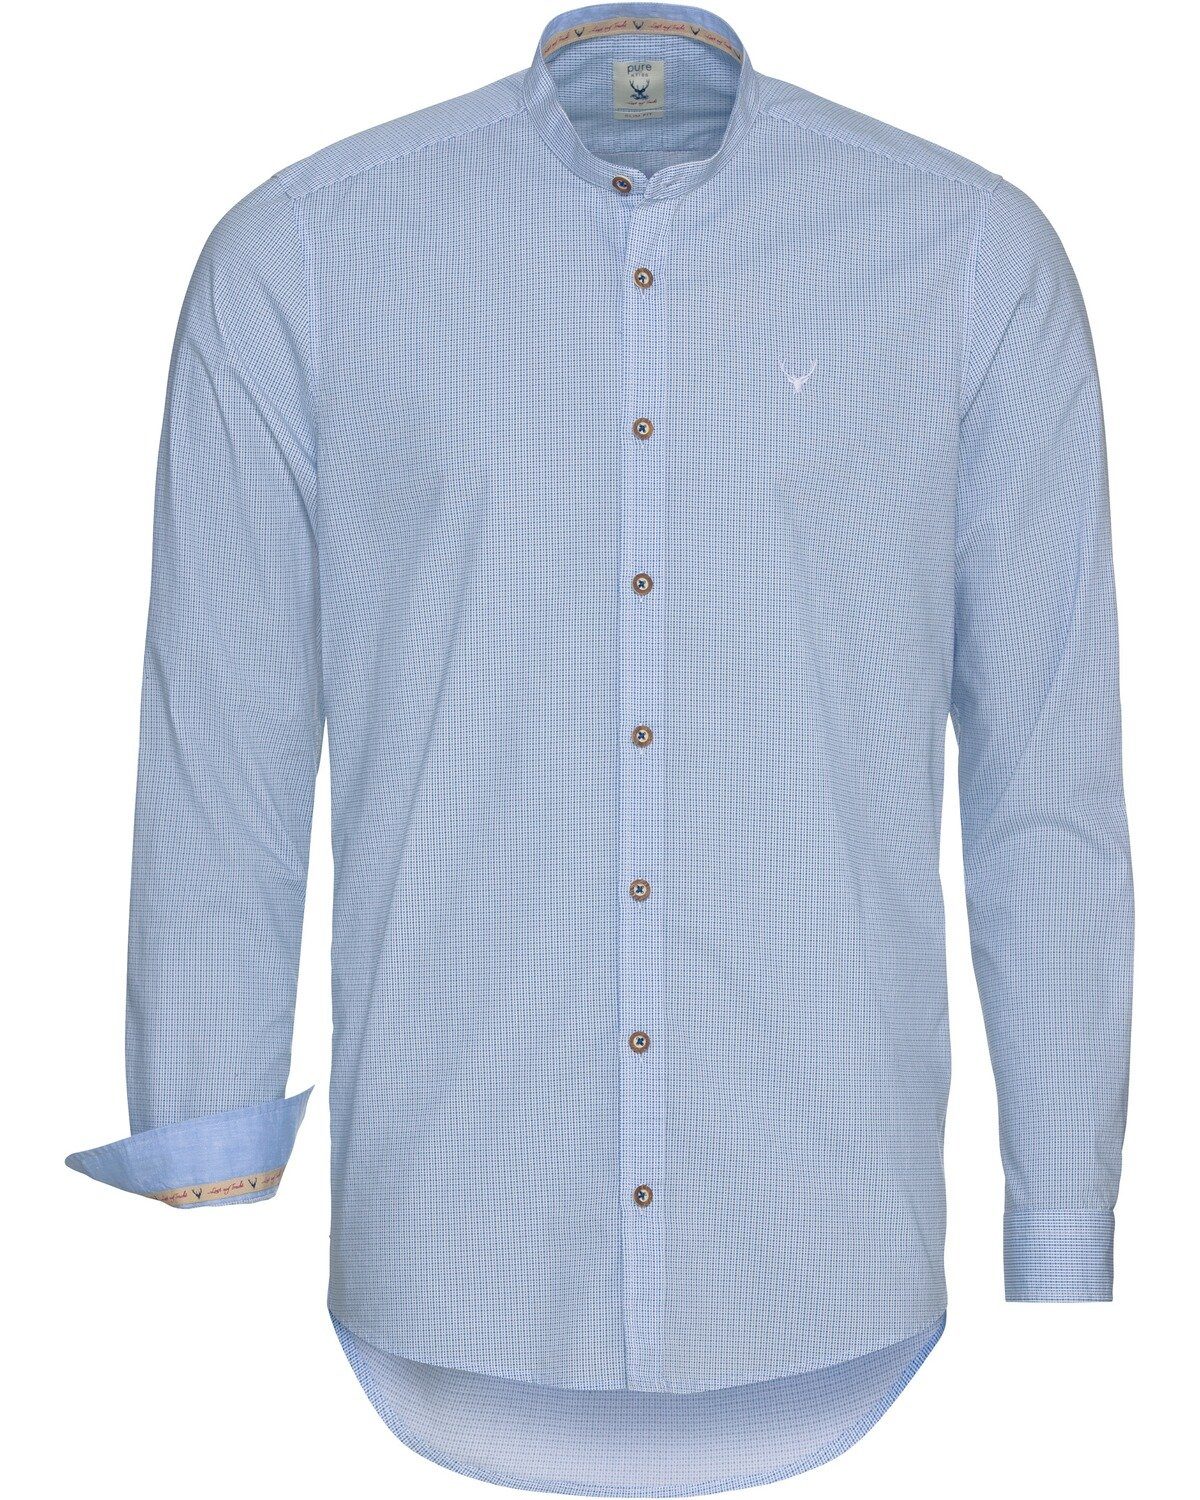 mit Pure Allover-Muster Trachtenhemd Stehkragenhemd Blau